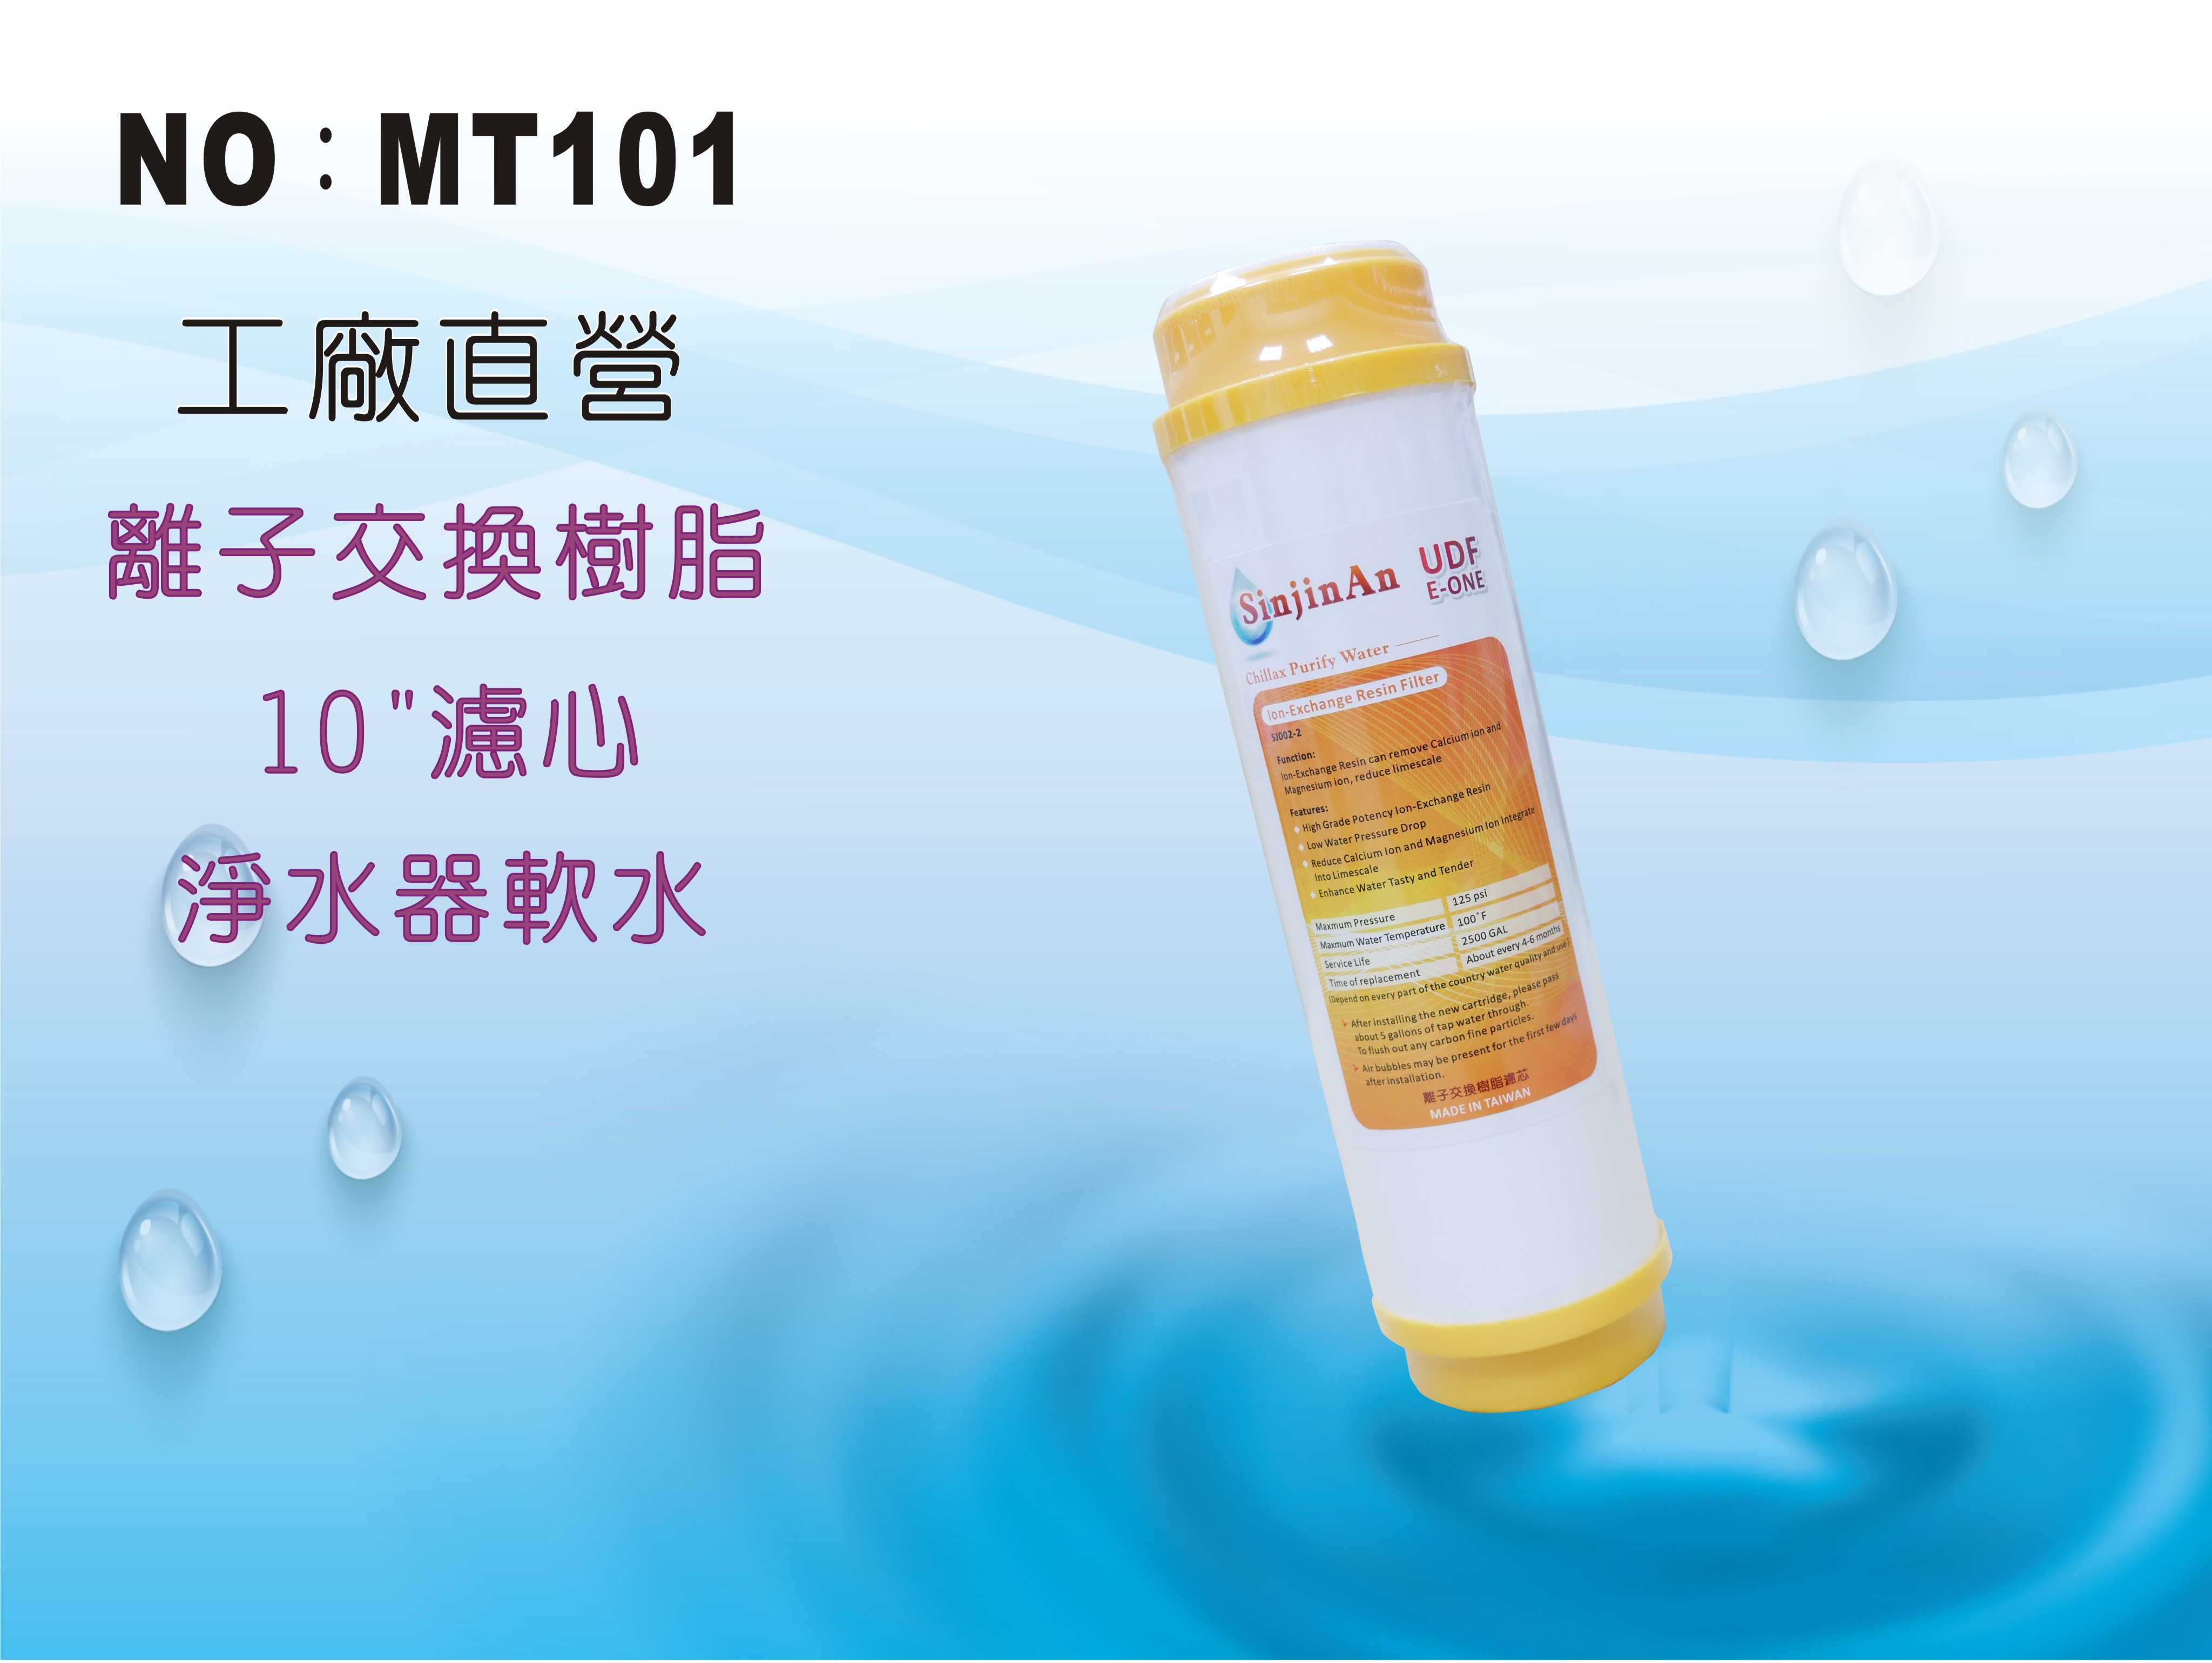 【龍門淨水】10吋UDF E-ONE陽離子交換樹脂濾心 水族魚缸 軟水器 淨水器 飲水機(MT101)